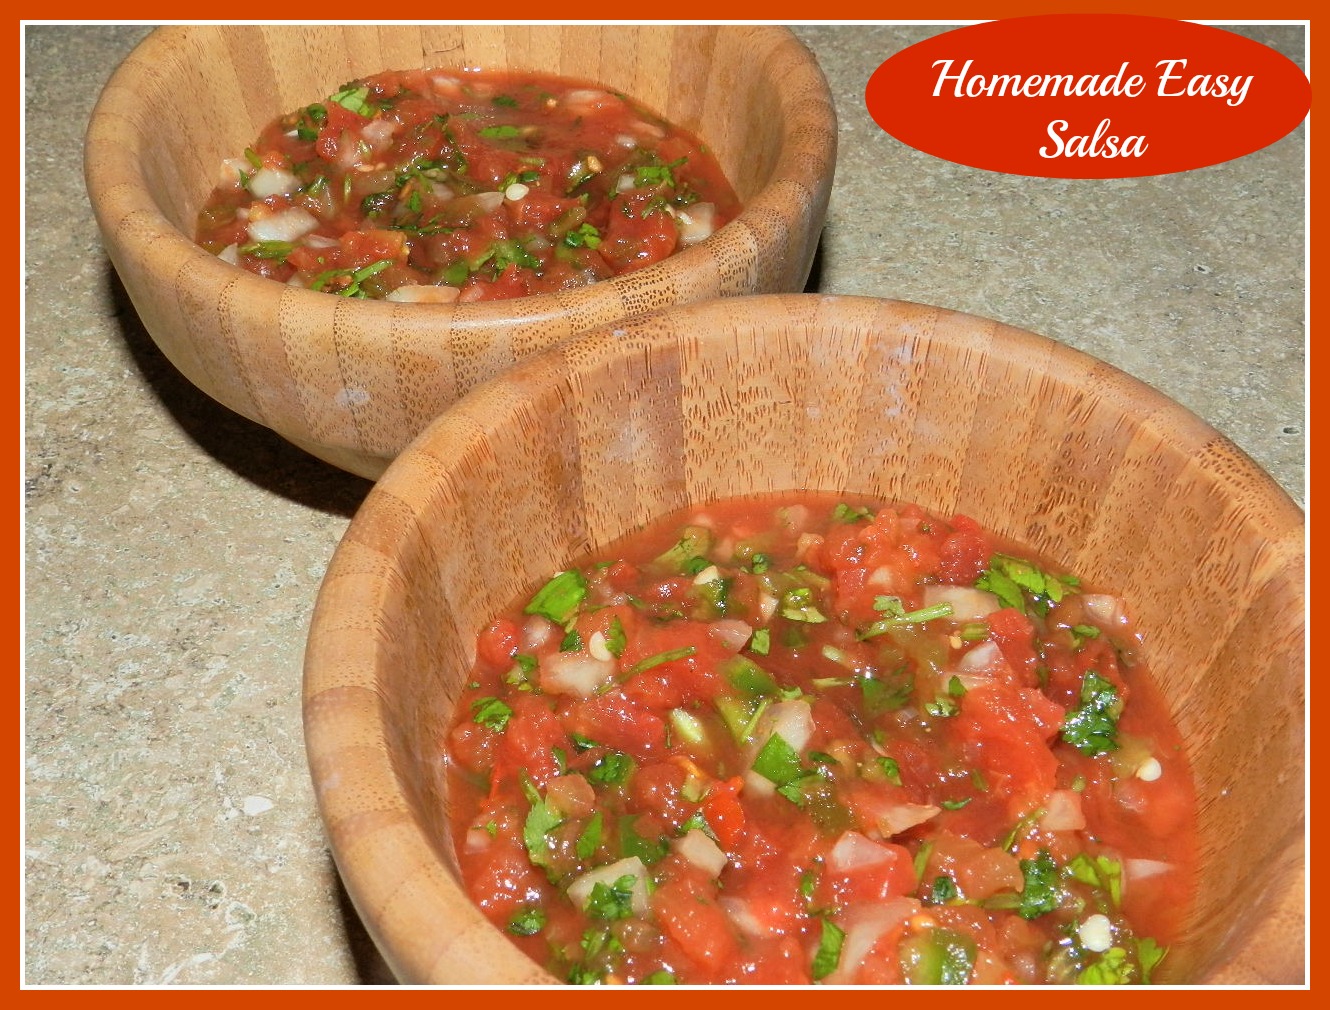 Homemade Easy Salsa